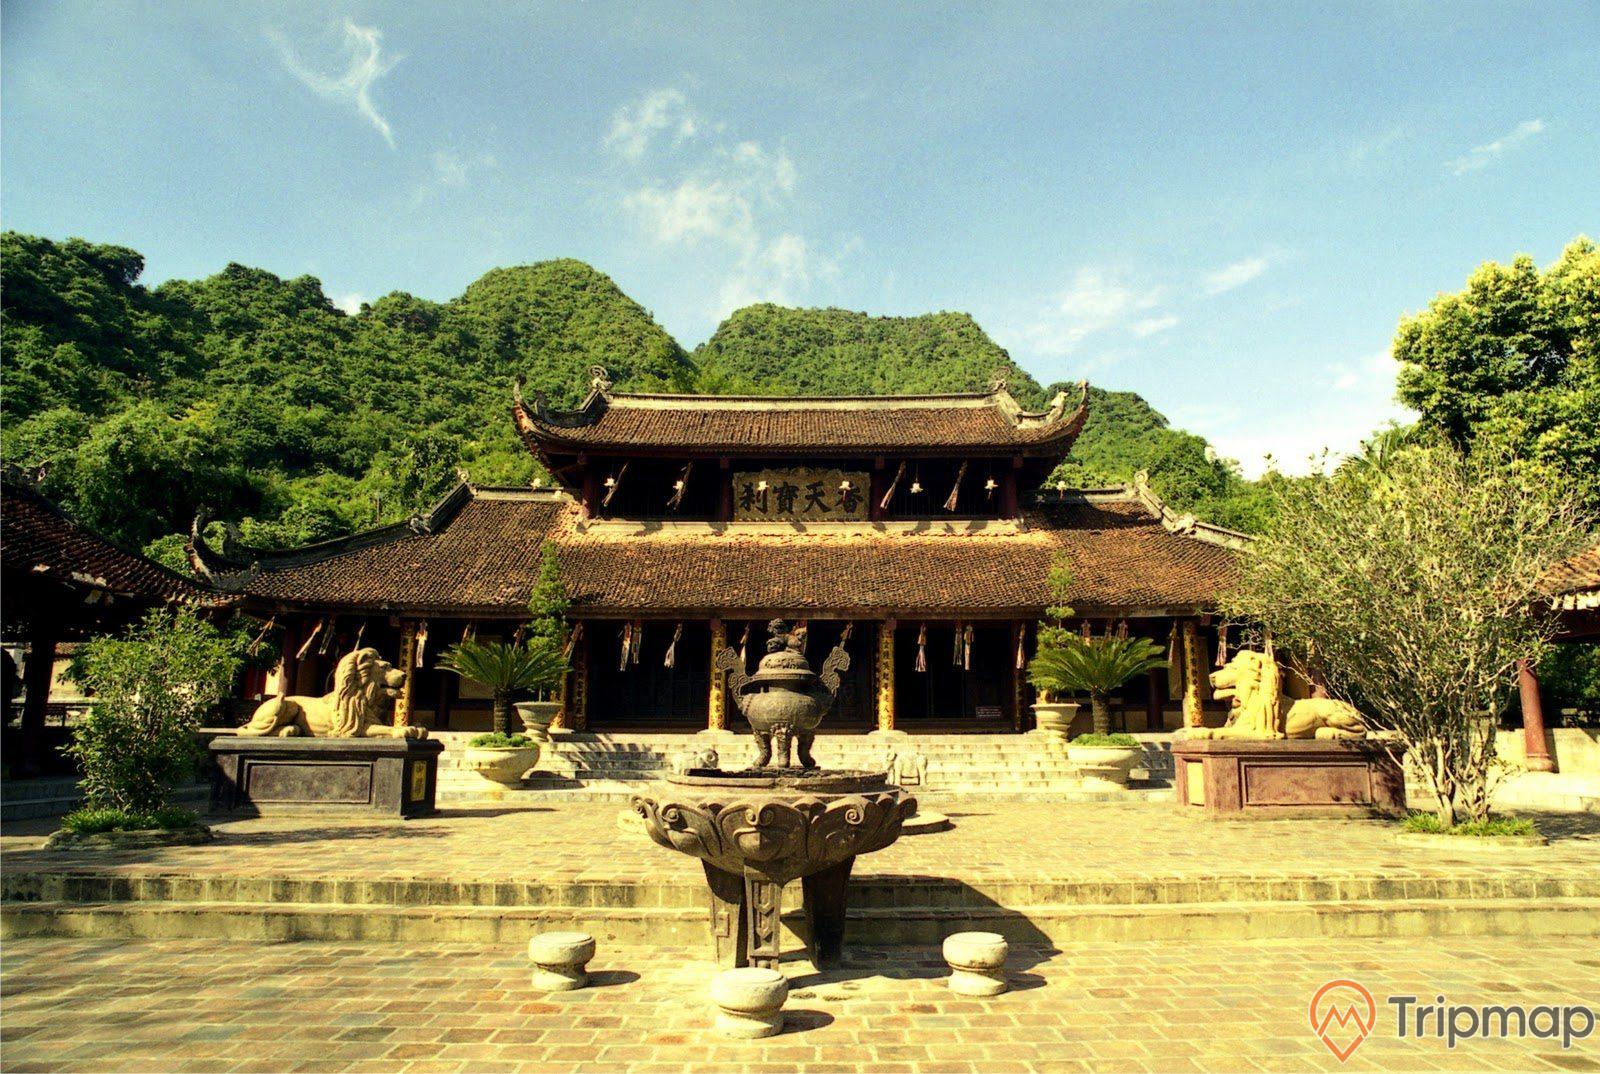 ảnh chụp chùa Thiên Trù có 2 tần mái mà ngói cũ, 3 chiếc ghế và 1 lư hương, 2 con sư tử đá màu vàng, và 6 chậu cây cảnh ở trên sân chùa, núi đồi phủ đầy cây xanh ở phía sau ngôi chùa, bầu trời trong xanh ít mây, ảnh chụp chùa Thiên Trù ngoài trời